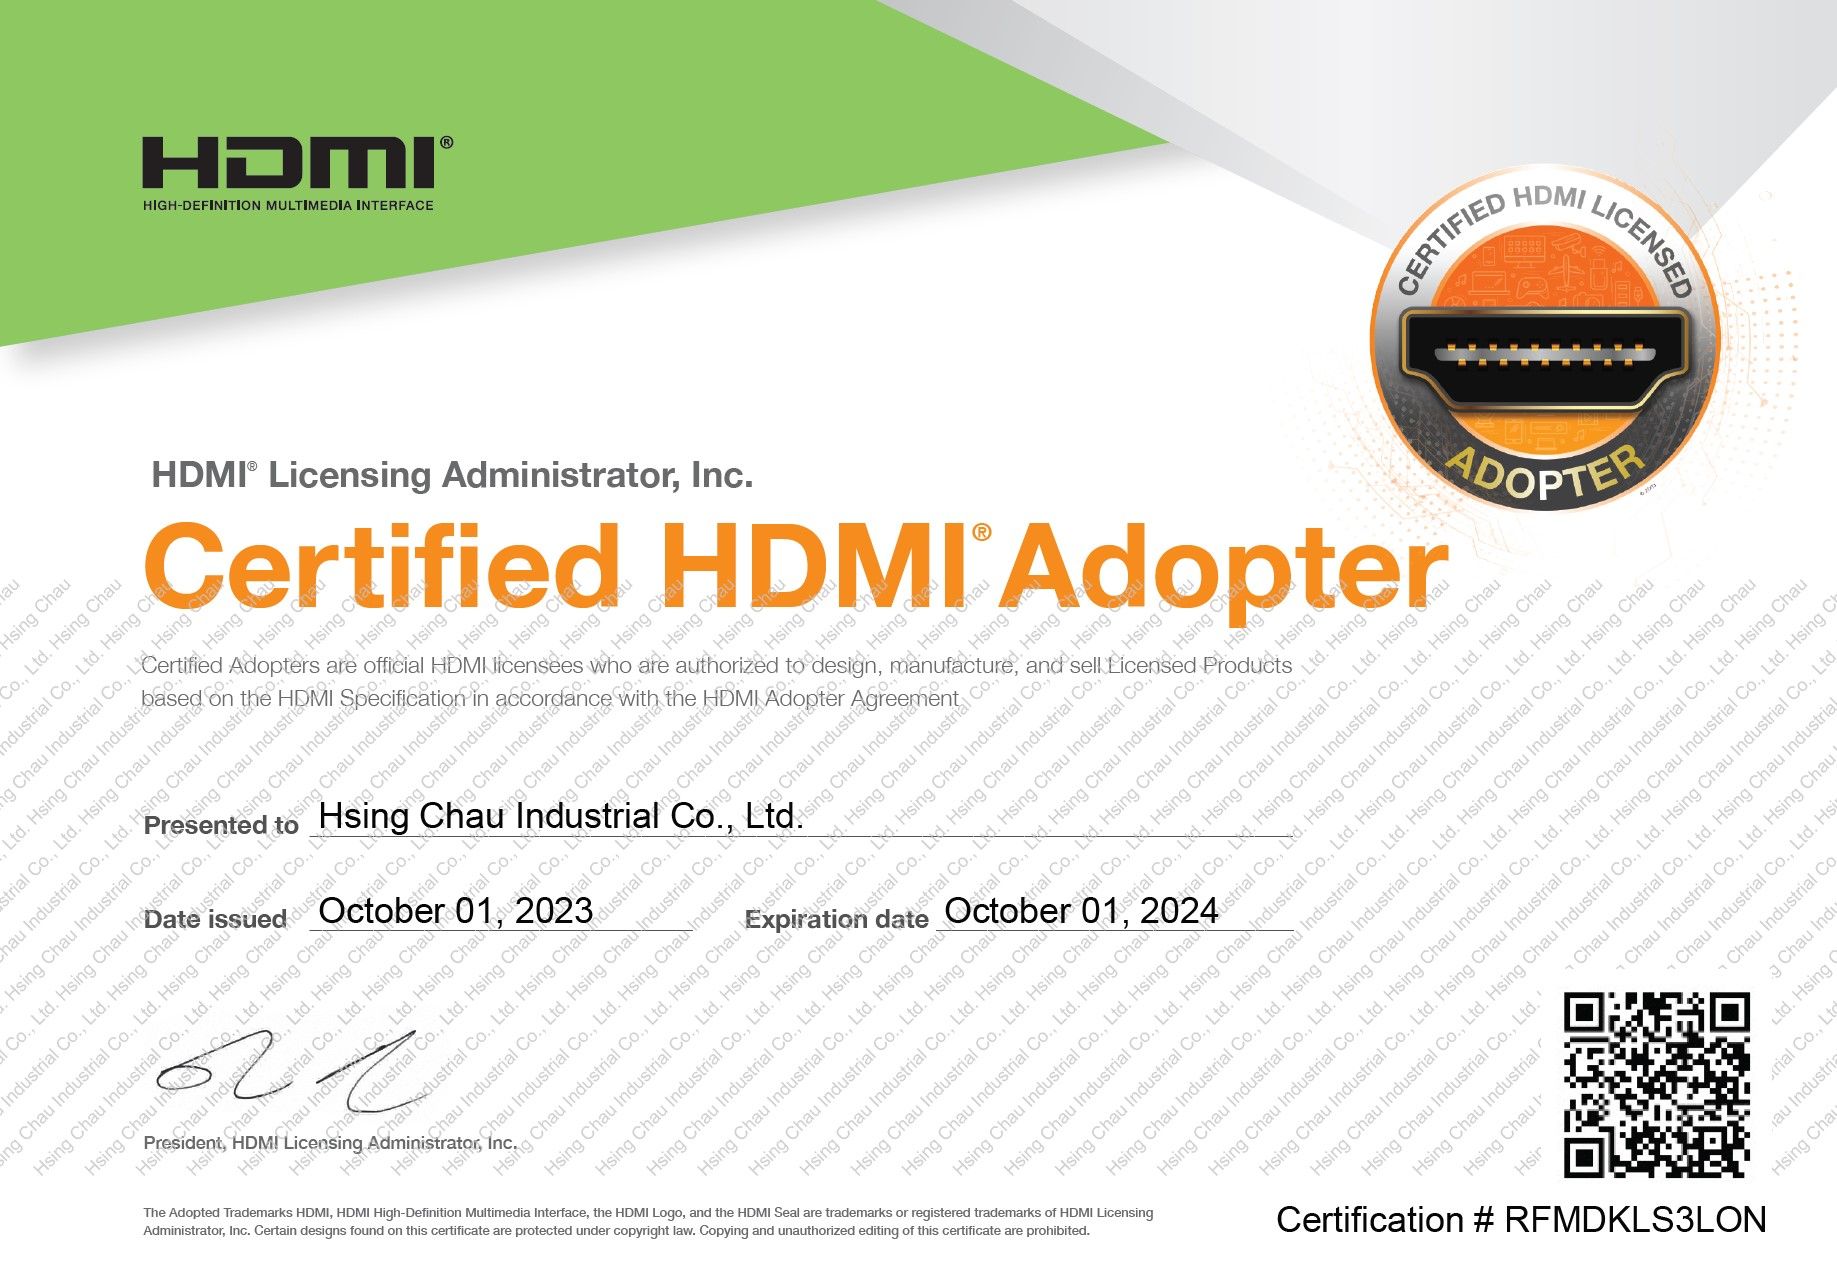 HCI Giấy phép HDMI Adopter 2023-2024